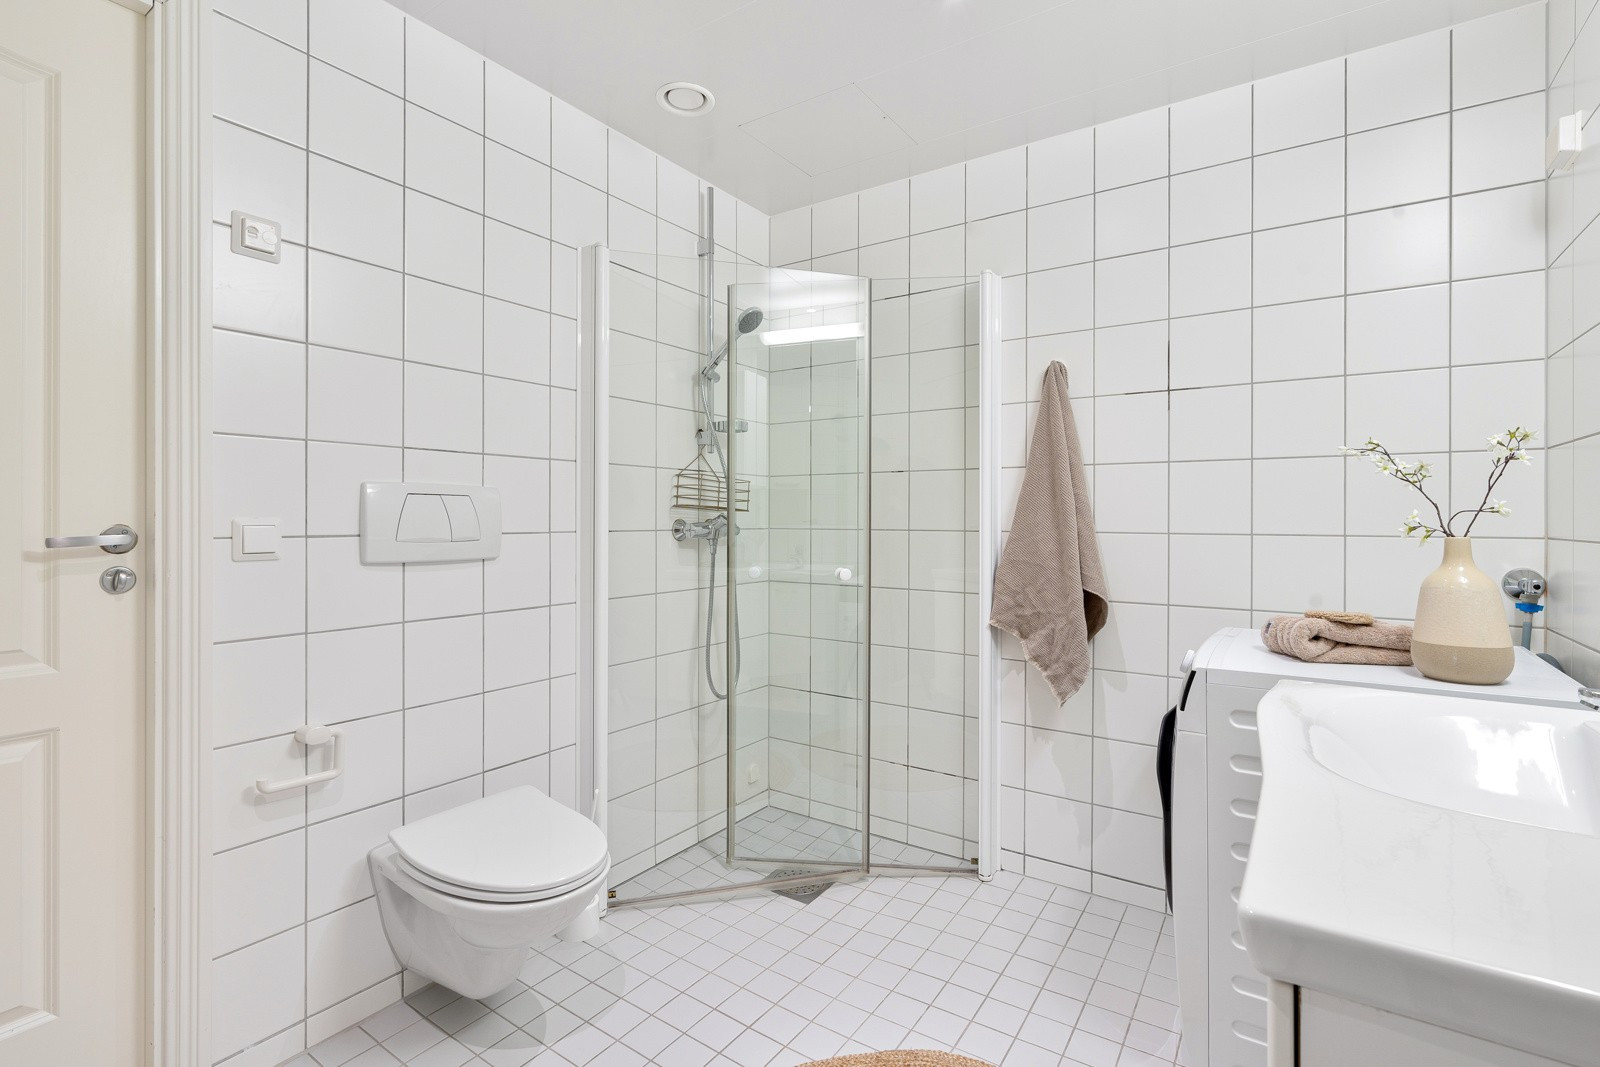 Badet inneholder vegghengt wc, servant og dusjhjørne